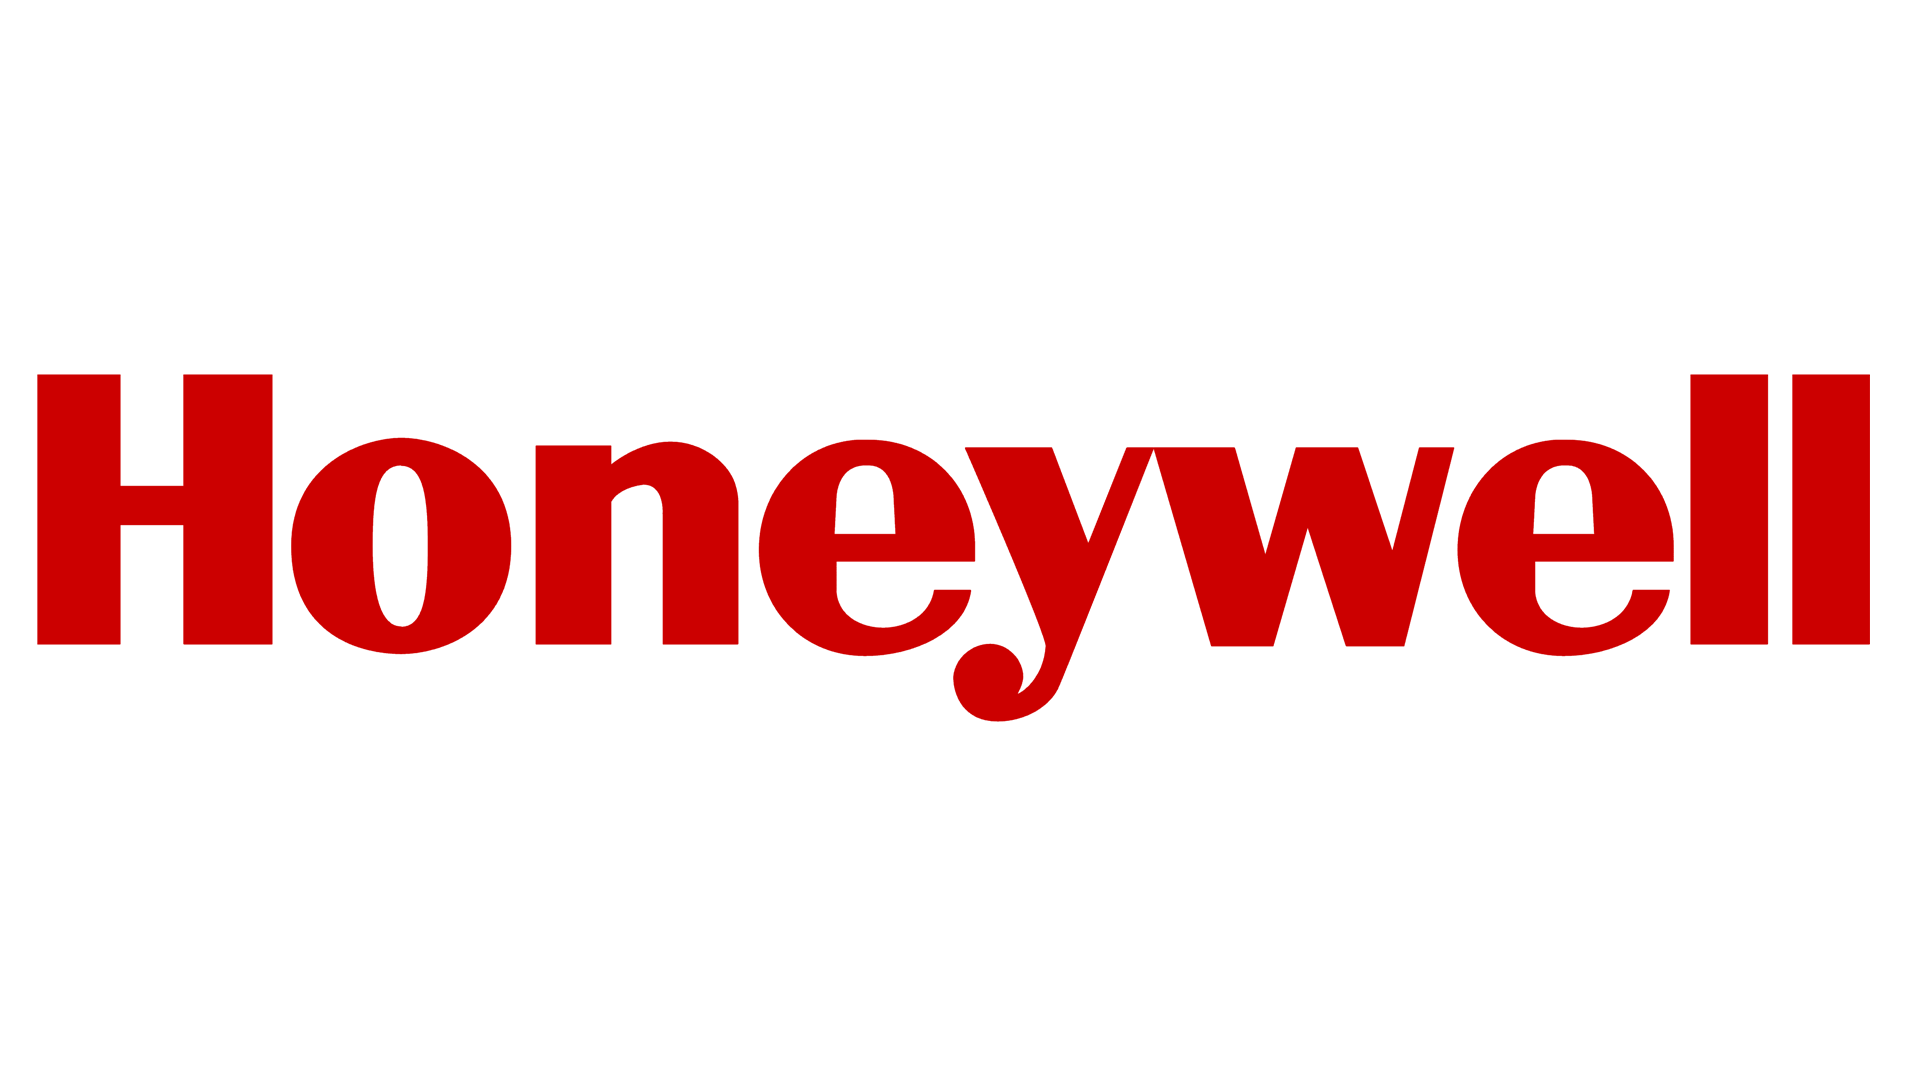 Λογότυπο Honeywell, Σύμβολο Honeywell, Έννοια, Ιστορία και Εξέλιξη